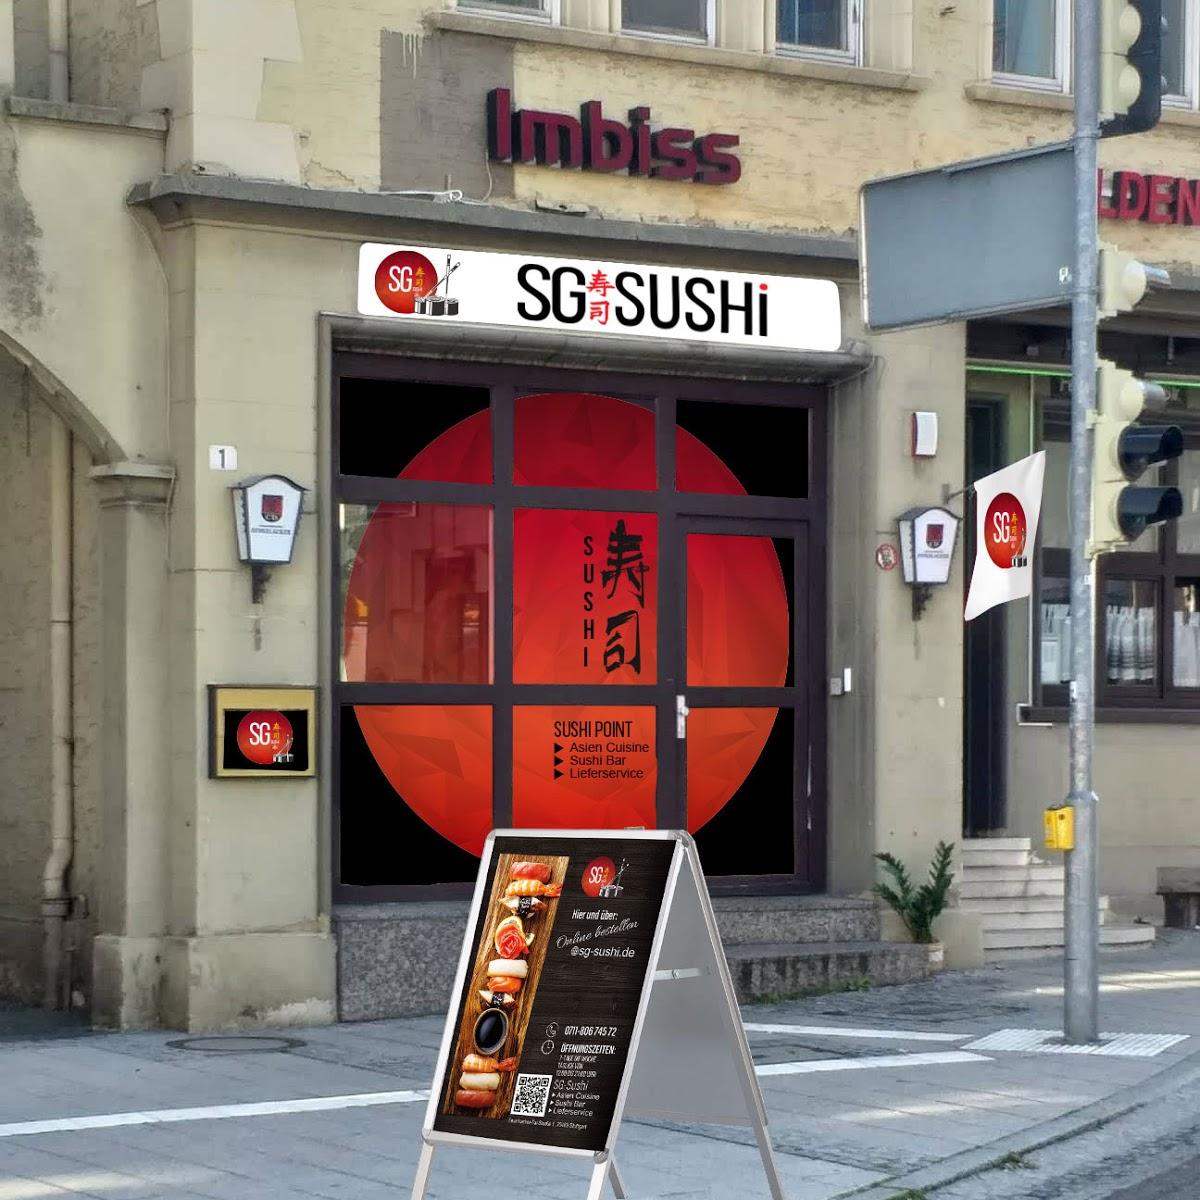 Restaurant "SG Sushi Lieferservice" in Stuttgart